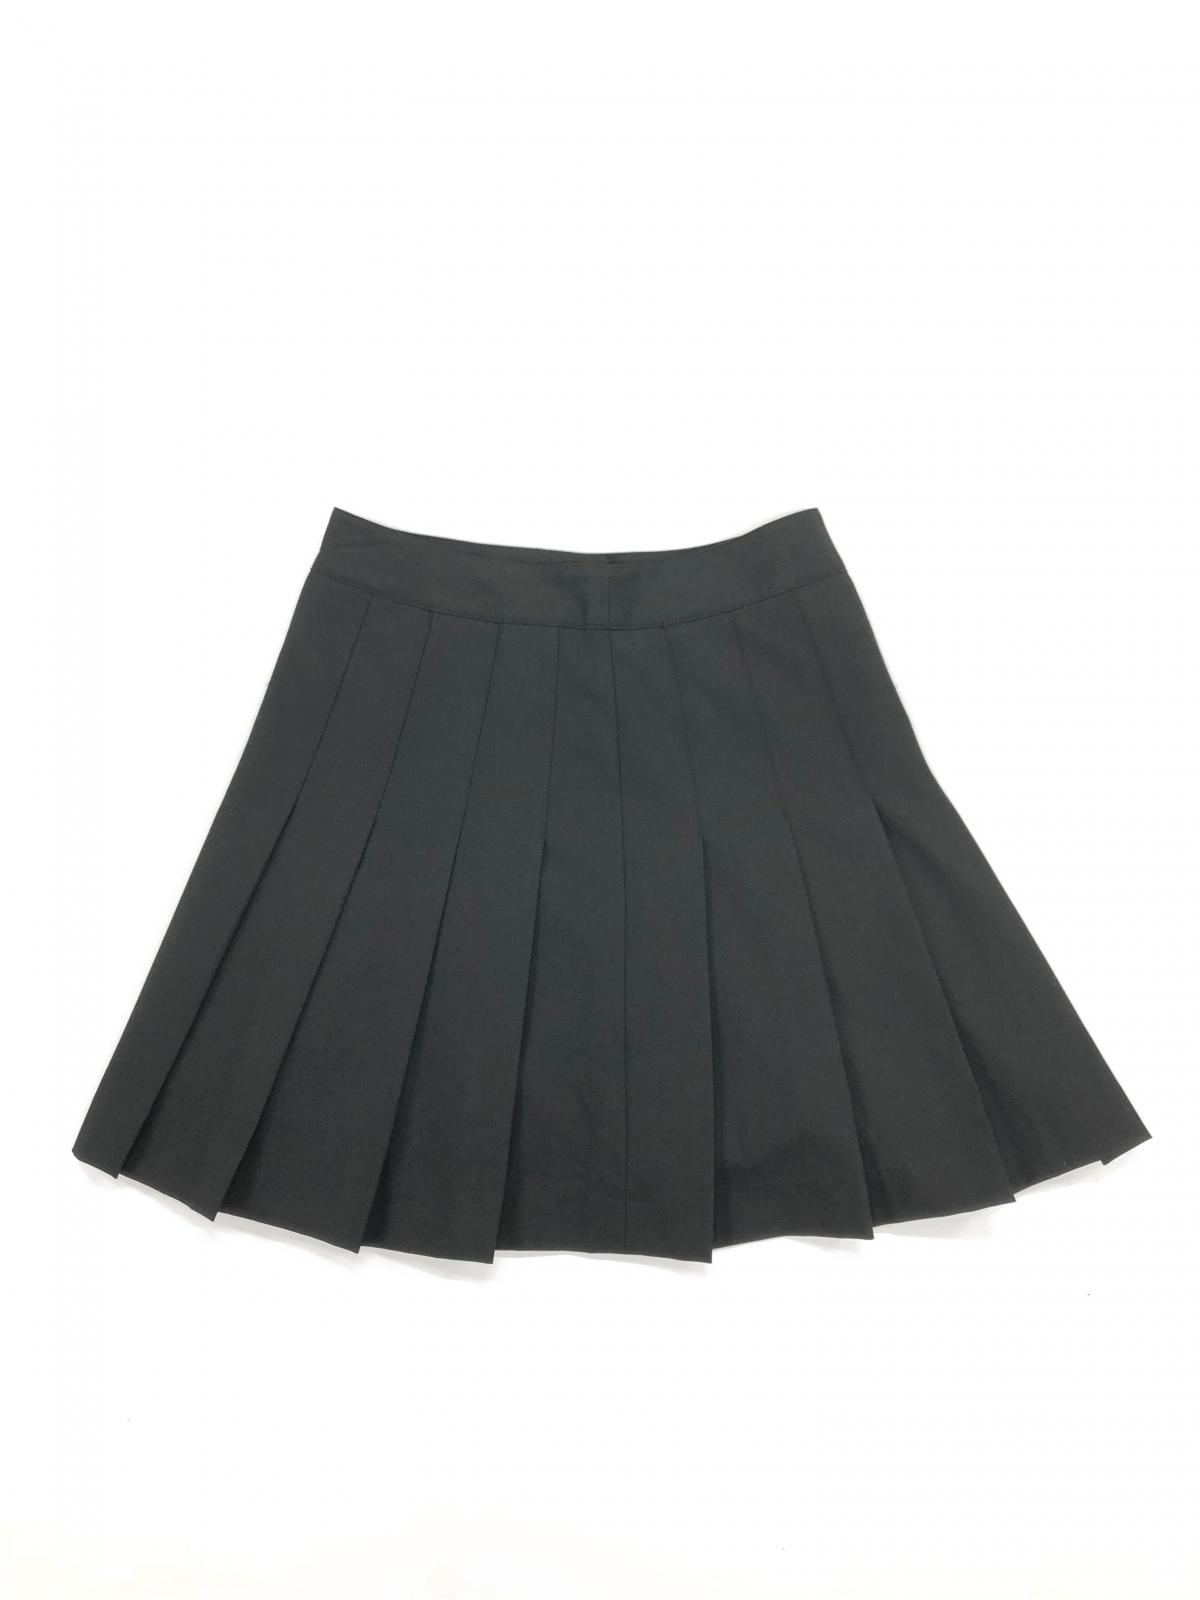 Women's skirts SK0001 #1